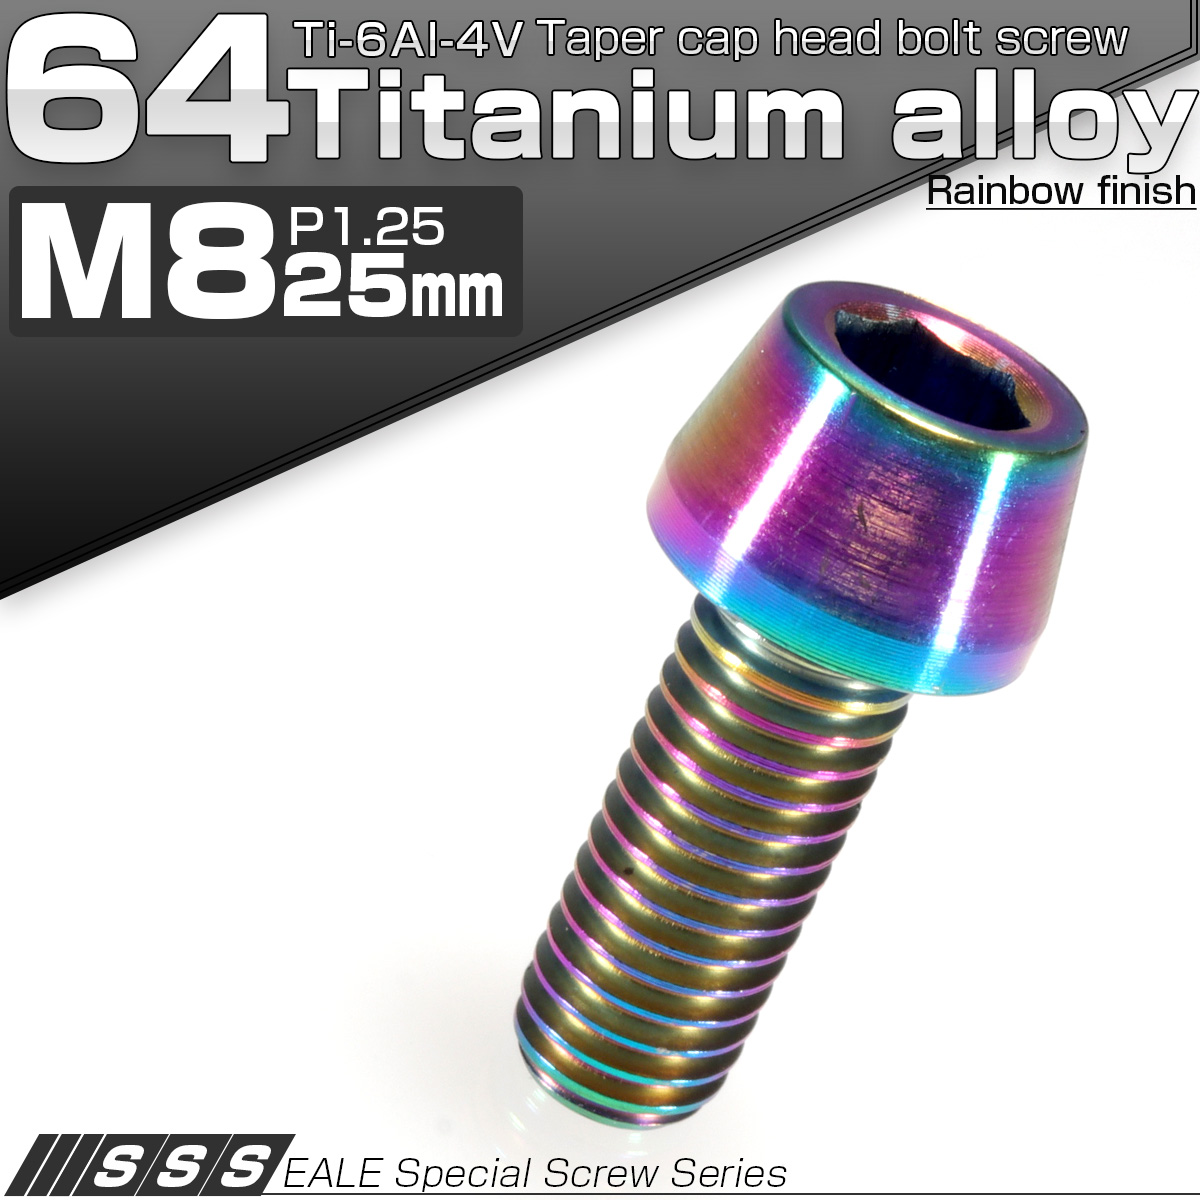 チタンボルト M8×25mm P1.25 キャップボルト 六角穴付き 虹色 焼きチタン風 テーパー JA132